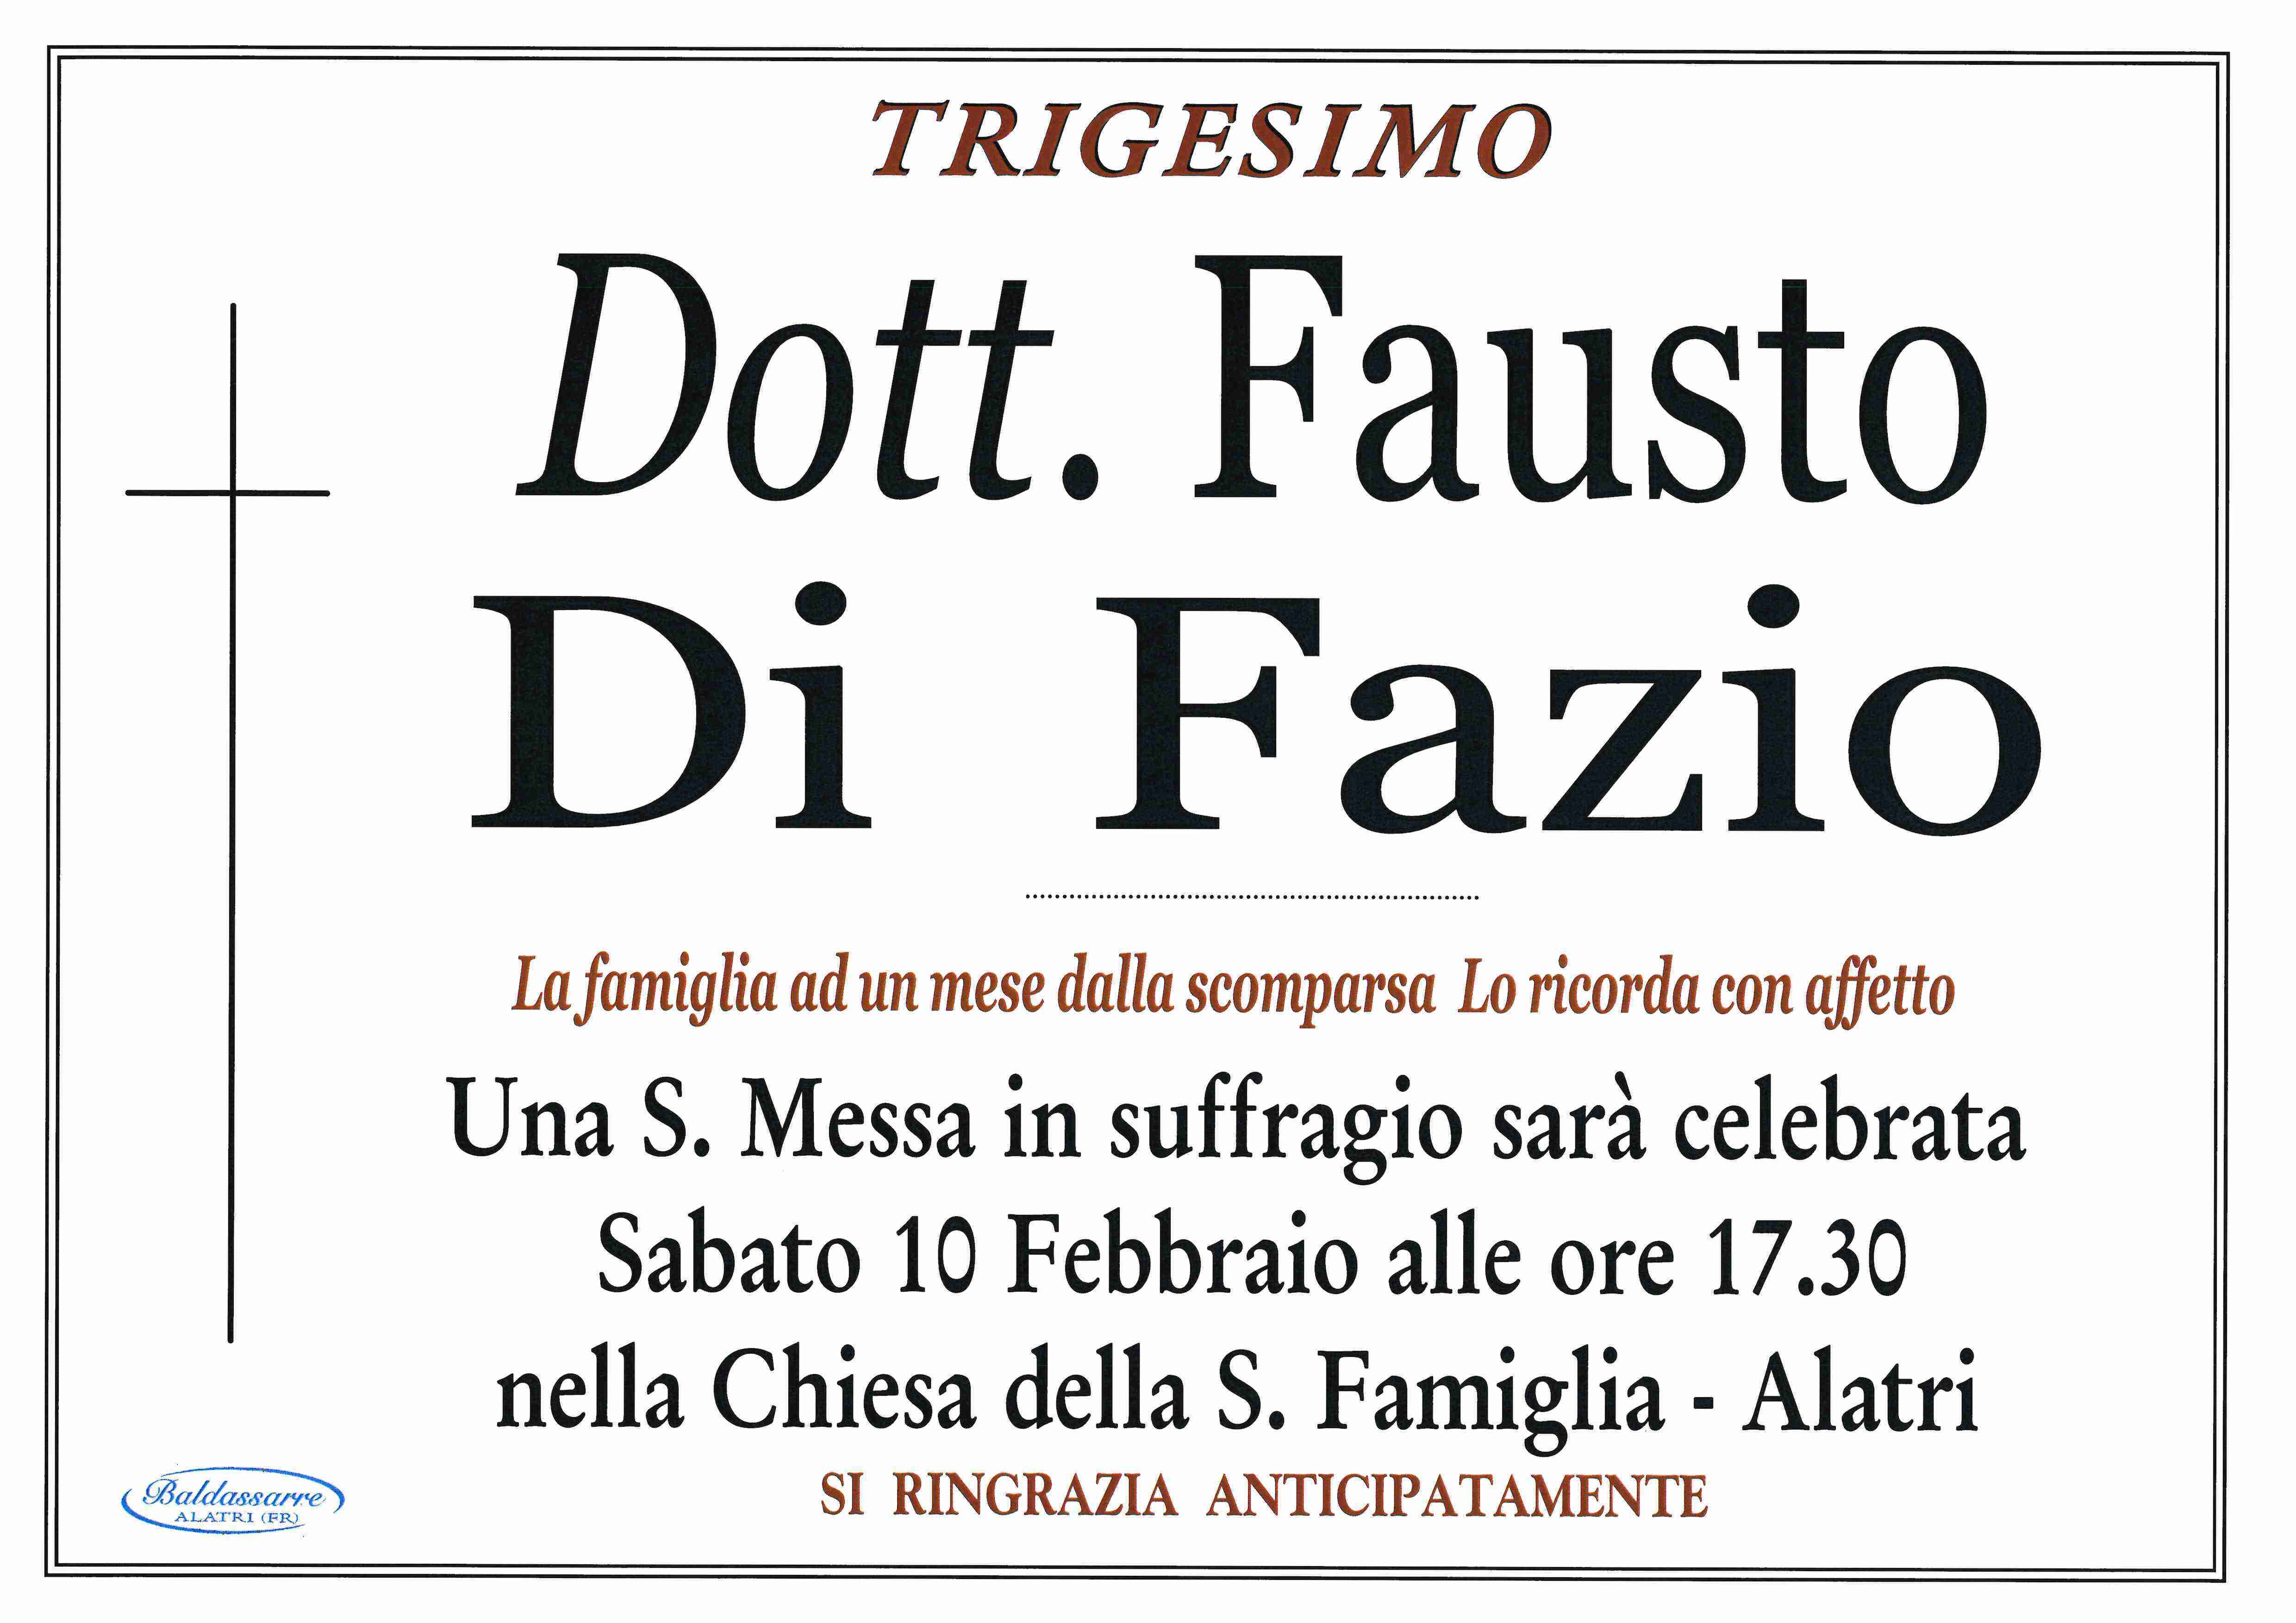 Fausto Di Fazio